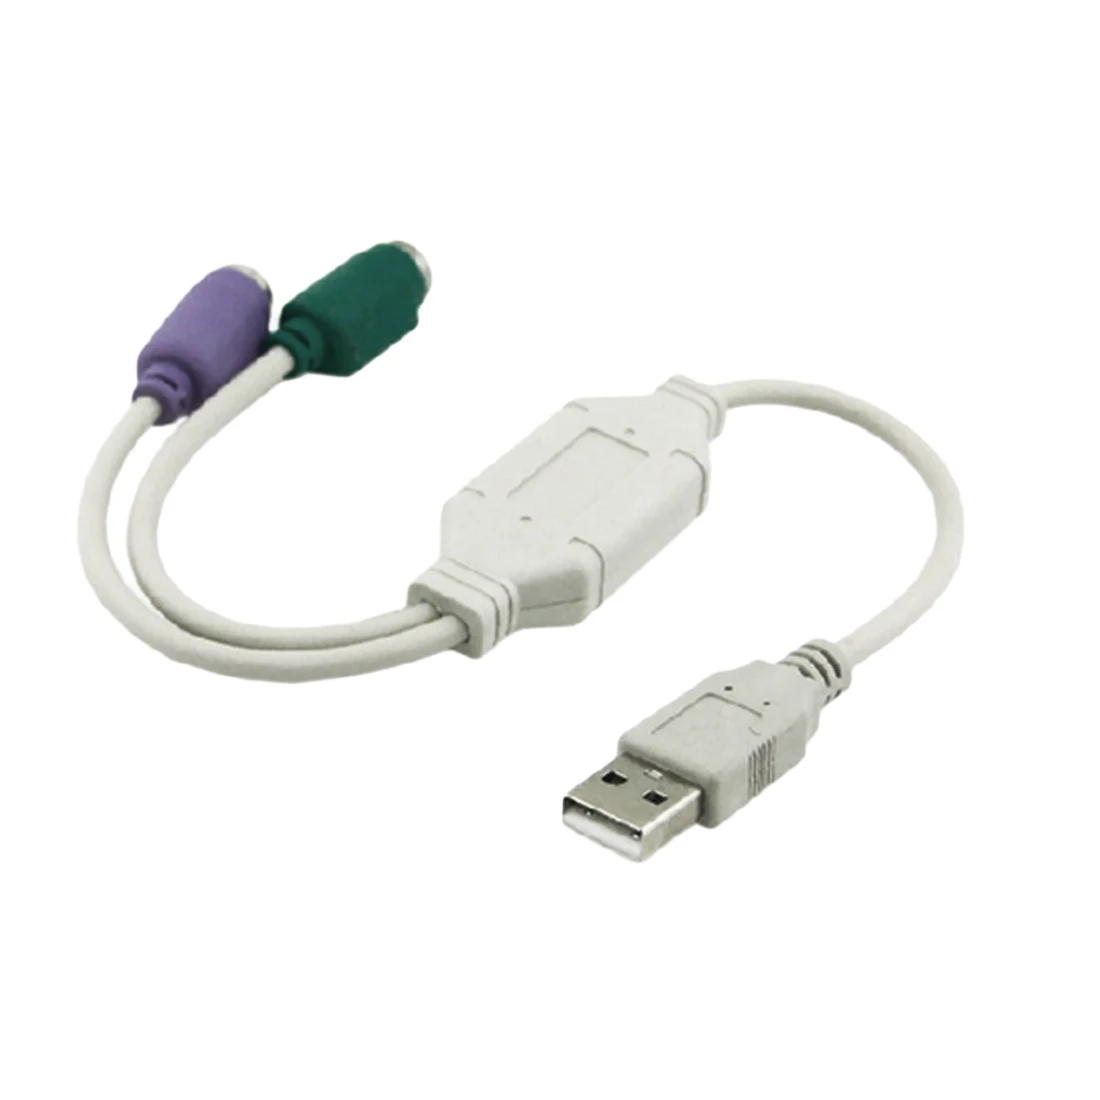 Кабель pc 2. USB ps2 Converter. Разветвитель PS/2 для клавиатуры и мыши. Переходник пс2 на юсб для клавиатуры. Ps2 PS/2 клавиатура мышь сплиттер кабель.